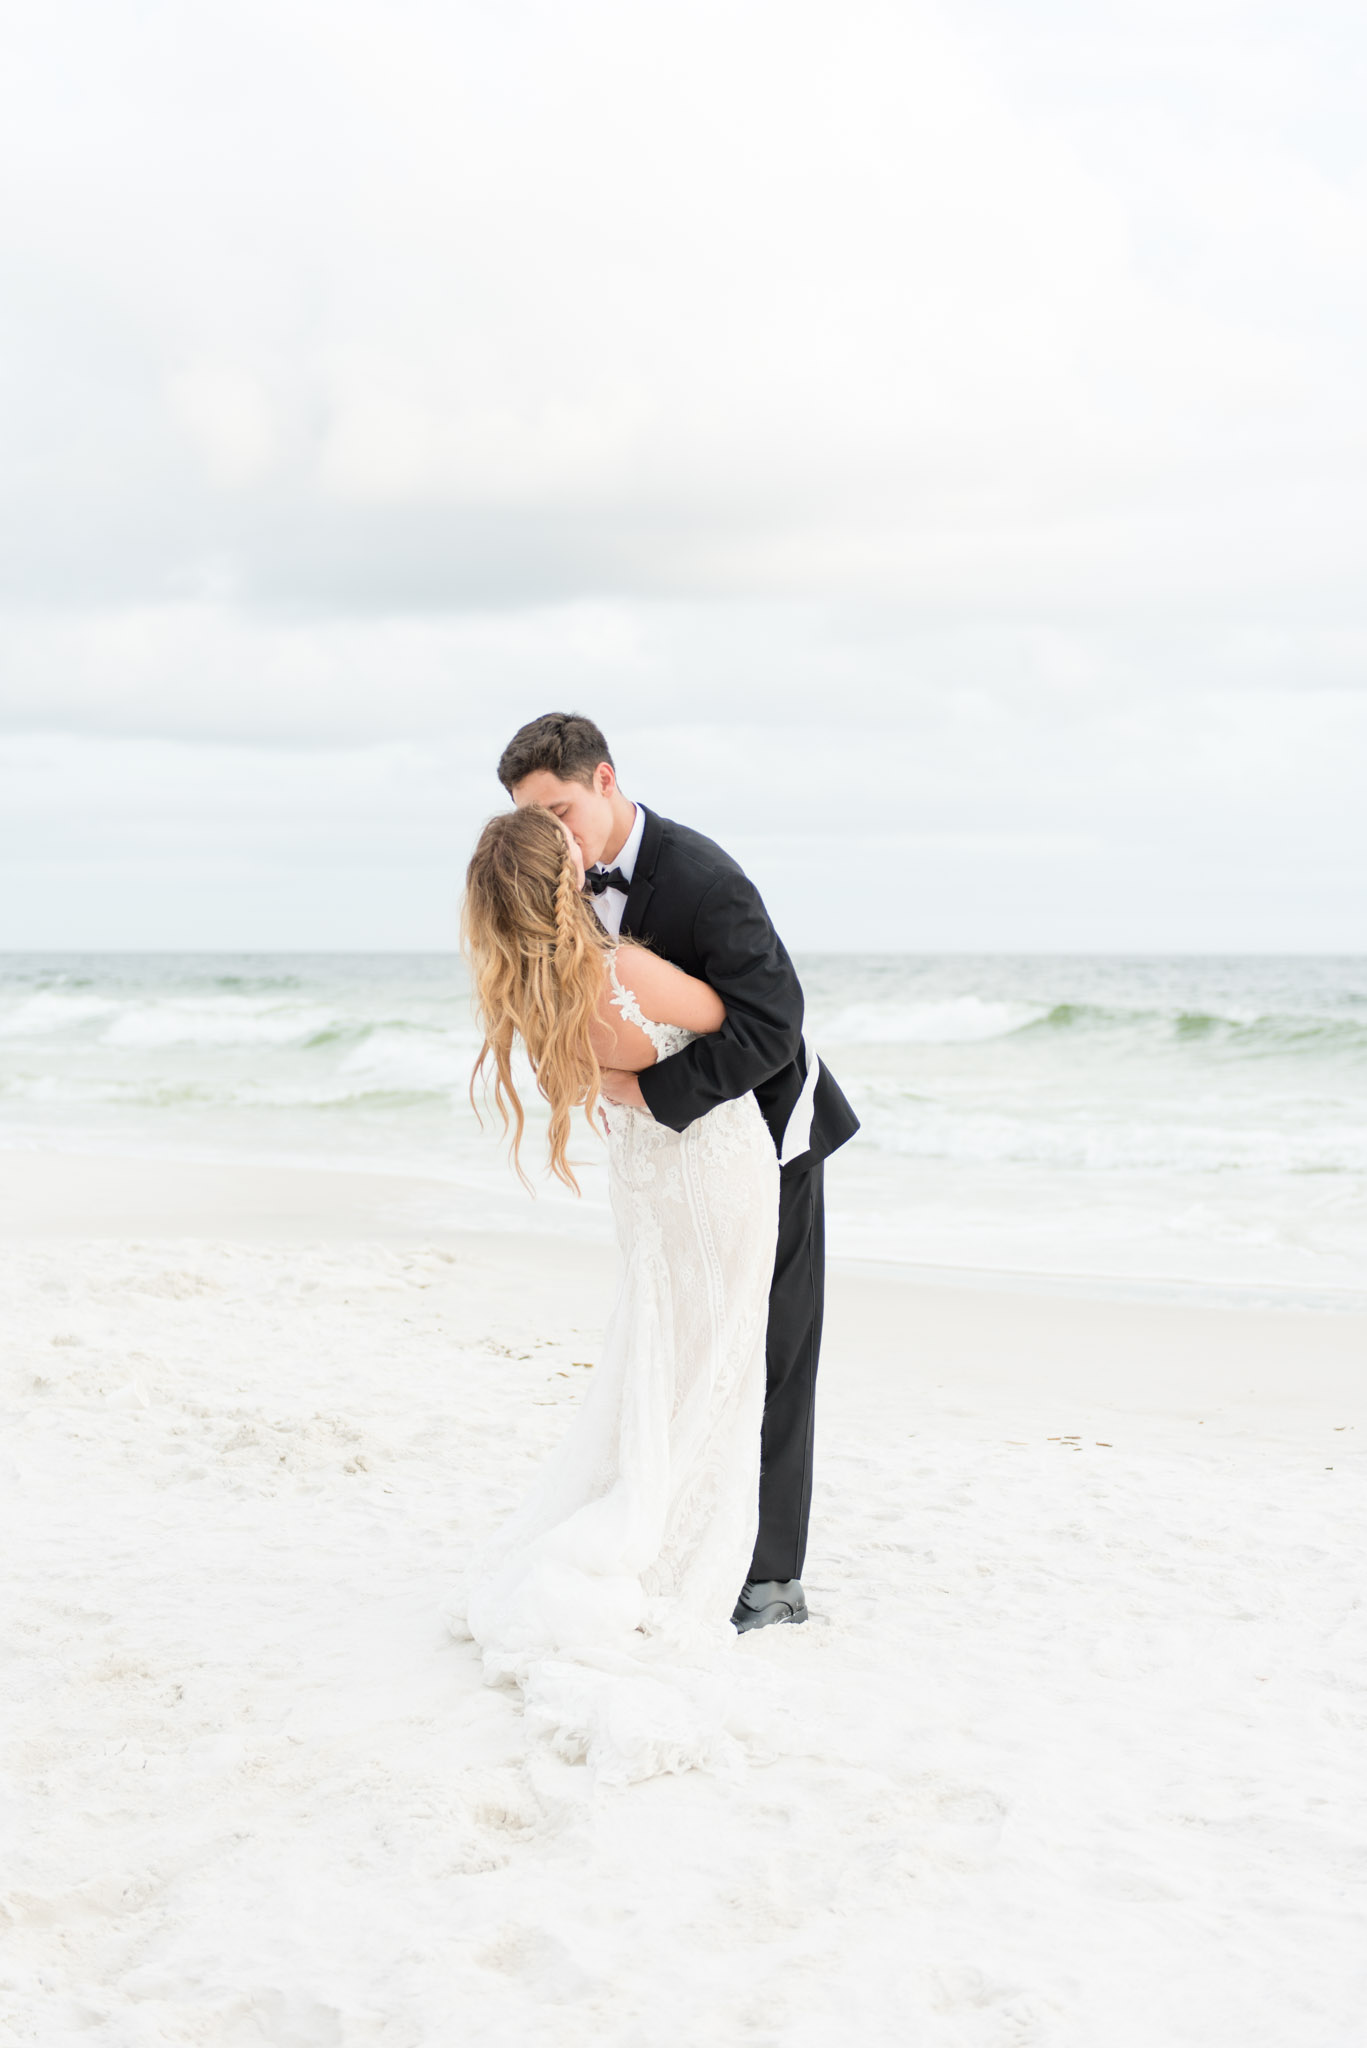 Groom kisses bride on beach by ocean.